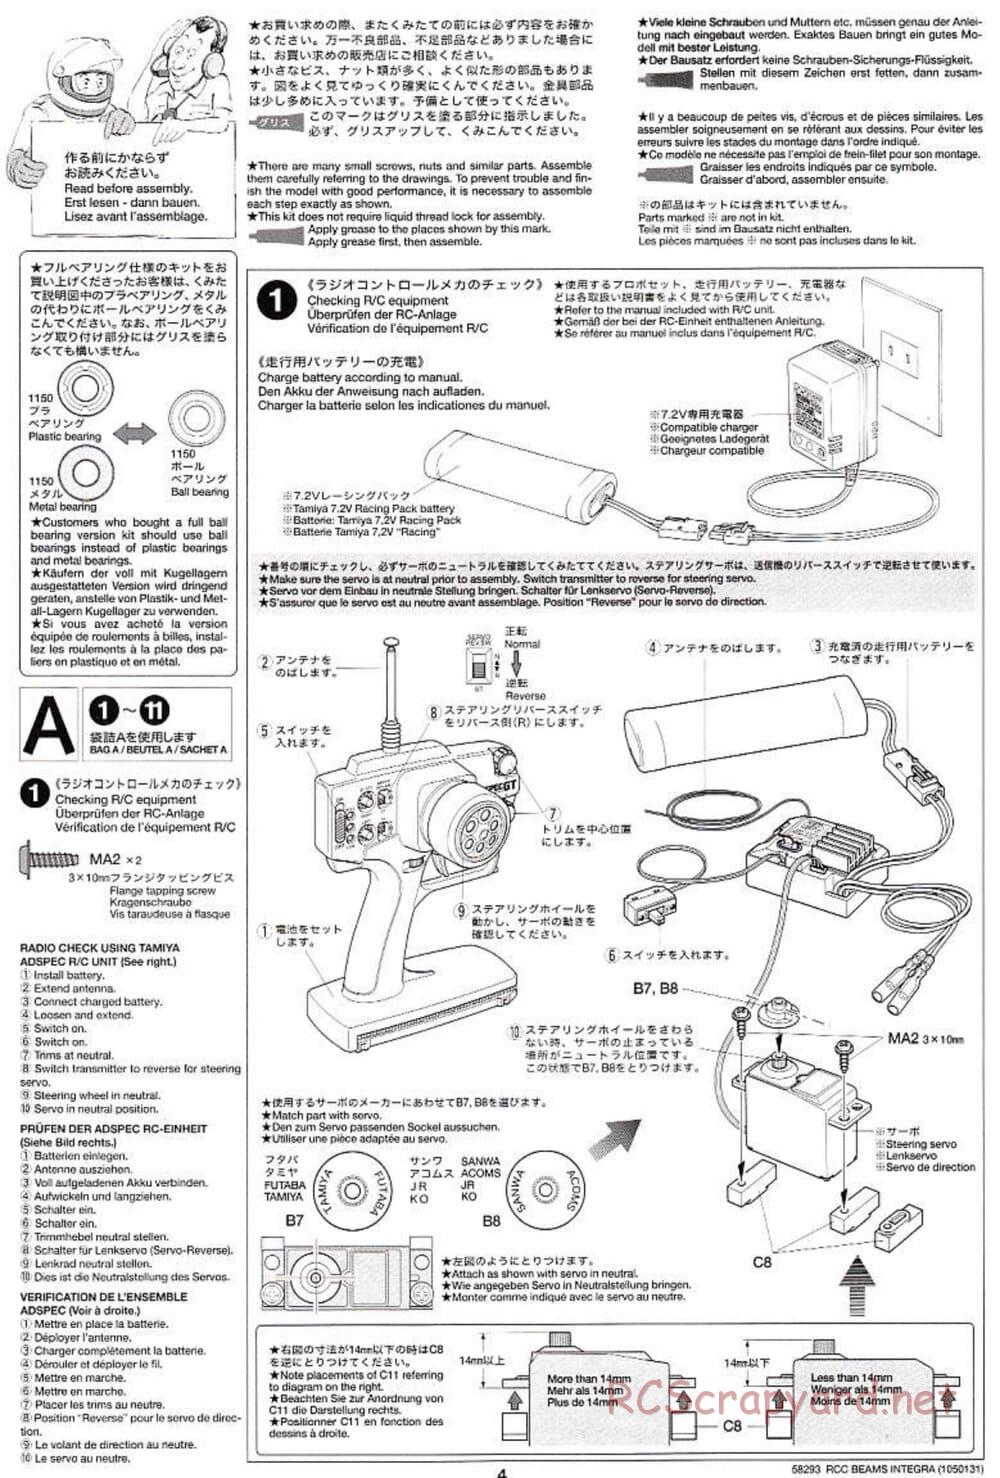 Tamiya - Beams Integra - TL-01 LA Chassis - Manual - Page 4